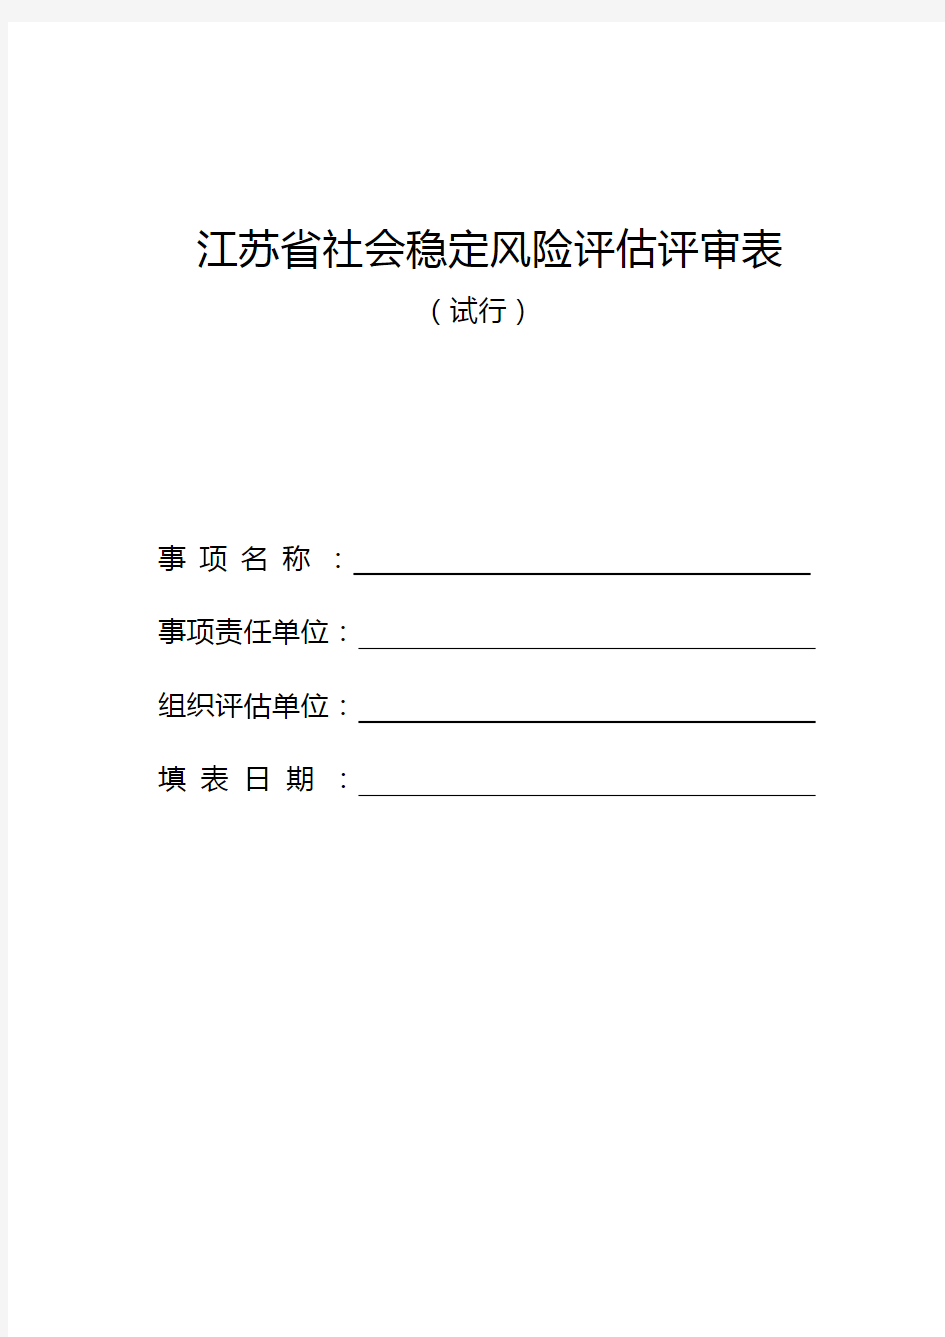 江苏省社会稳定风险评估评审表(附带说明书)